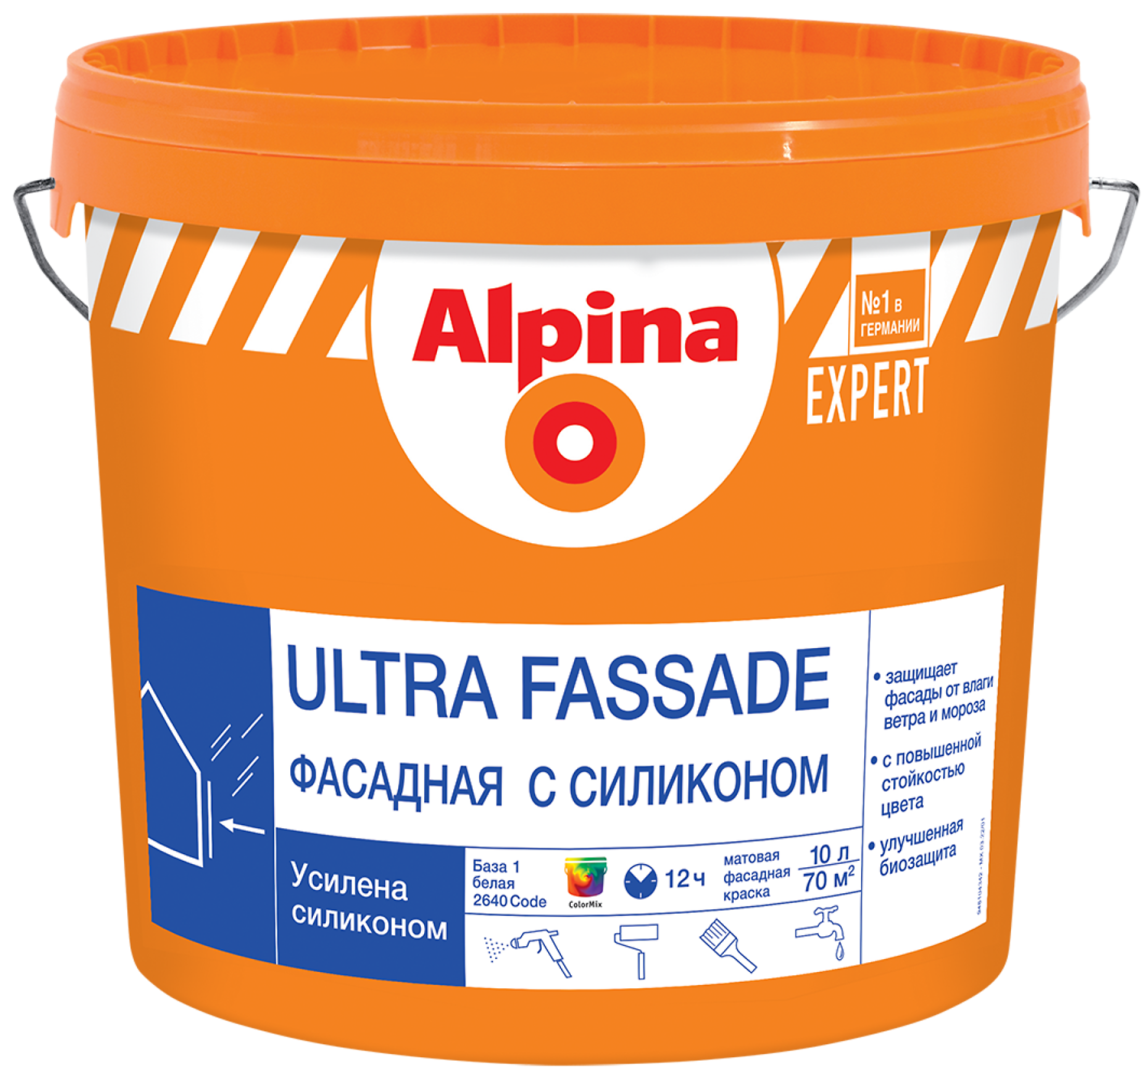 ALPINA EXPERT ULTRA FASSADE краска для наружных работ, фасадная с силиконом, База 1 (2,5л)